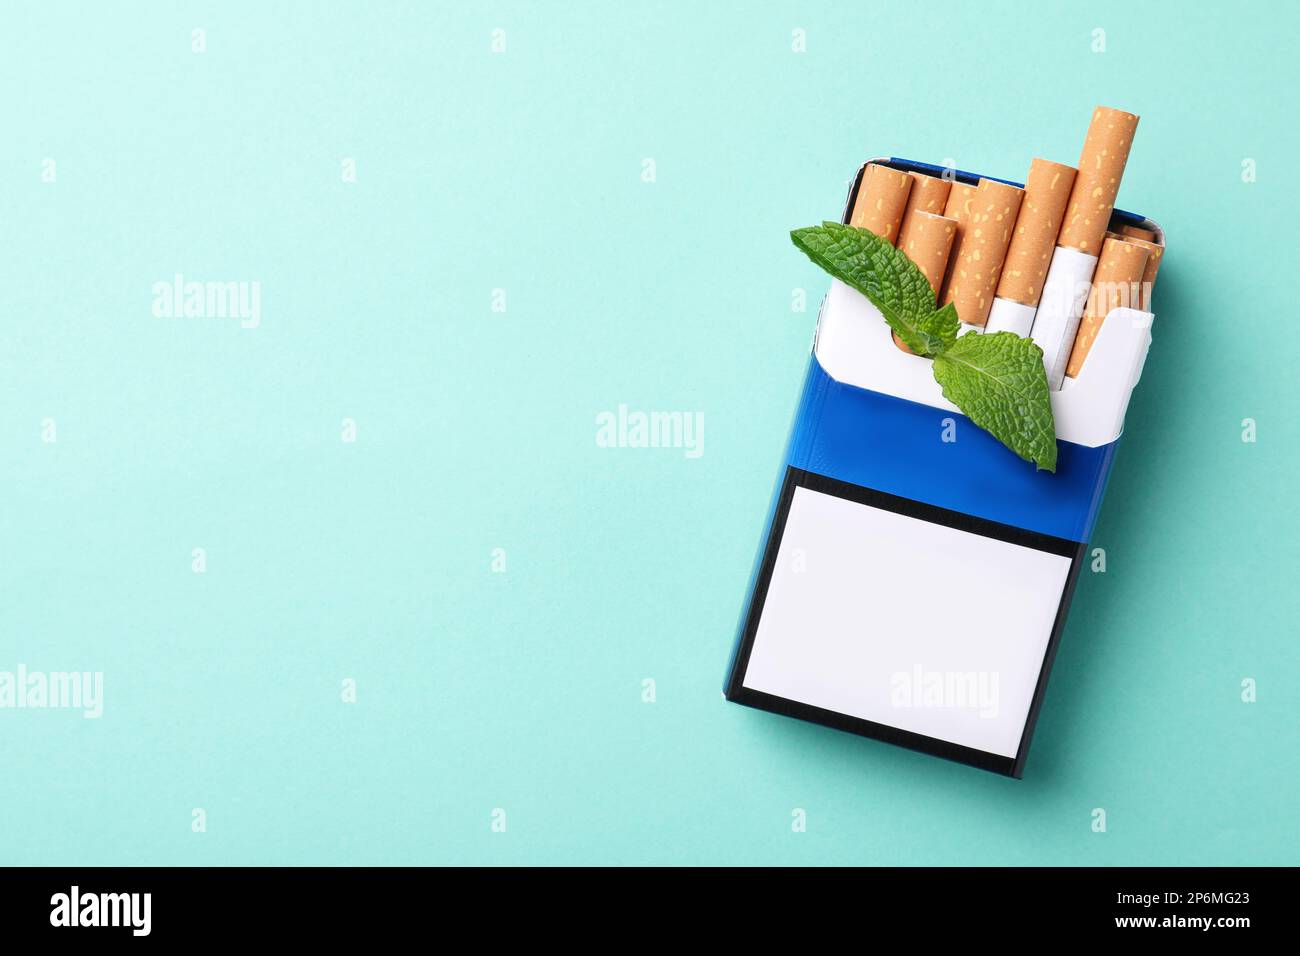 Paquet de cigarettes de menthol et de menthe sur fond turquoise, vue de dessus. Espace pour le texte Banque D'Images